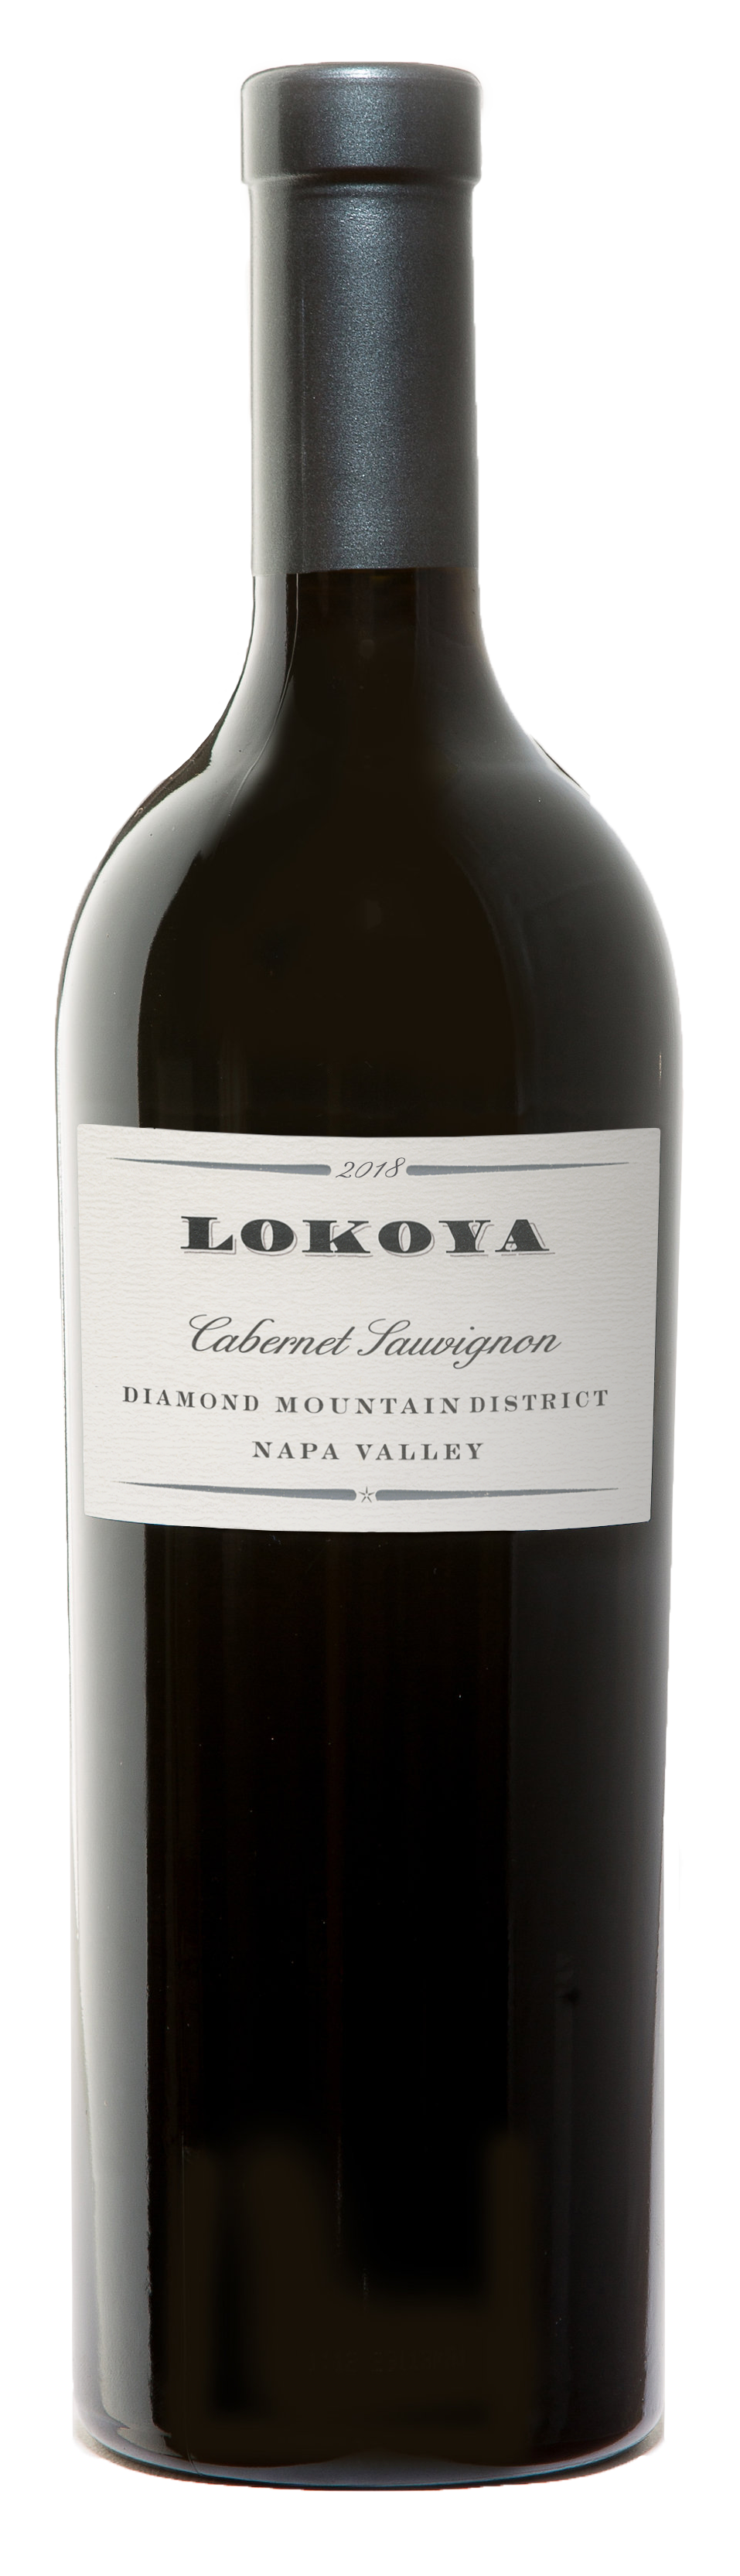 Lokoya Wine - Learn About & Buy Online | Wine.com